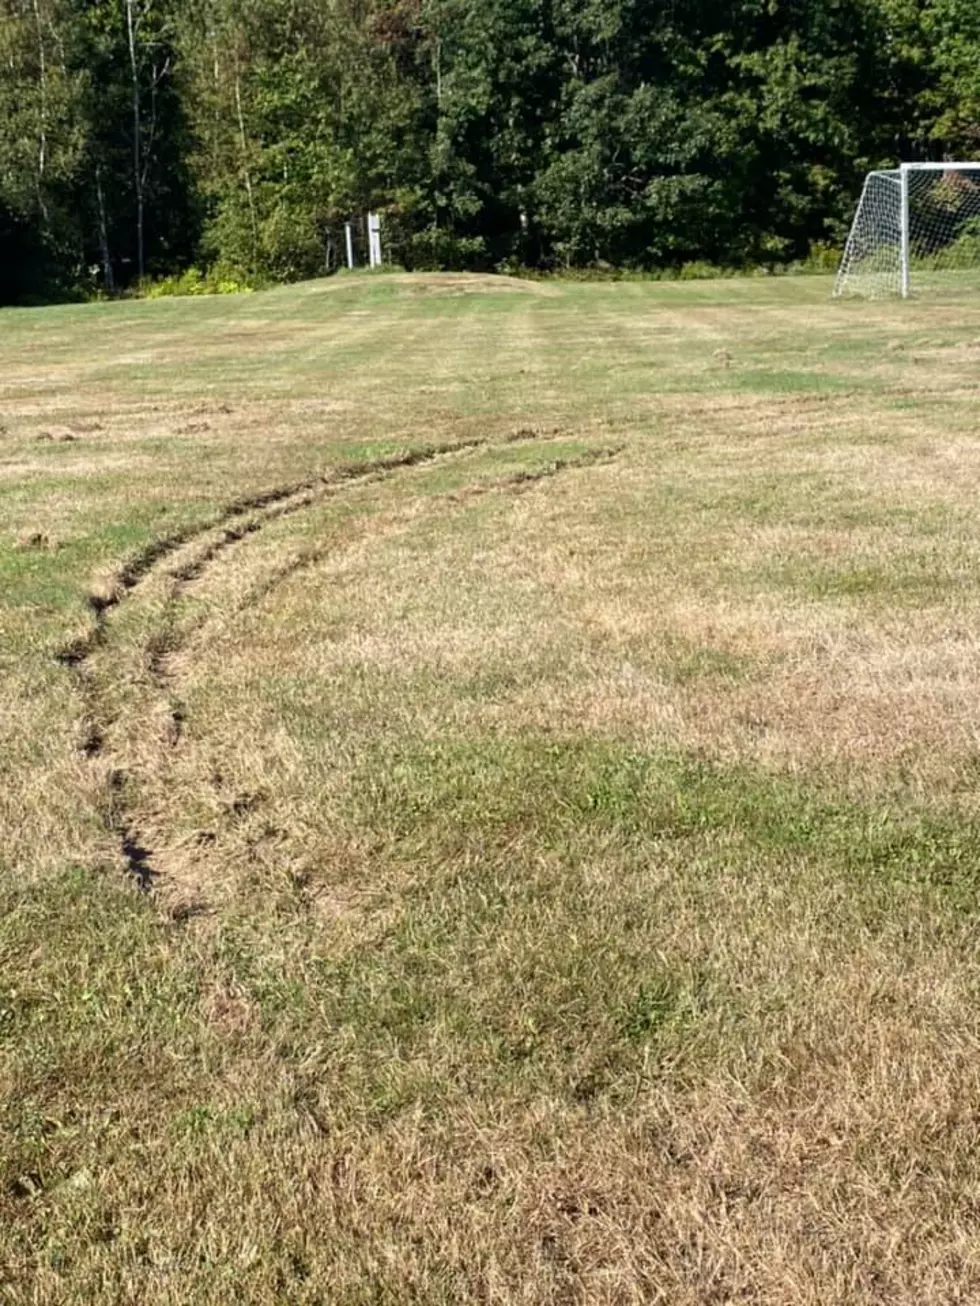 Trenton Soccer Field Vandalized